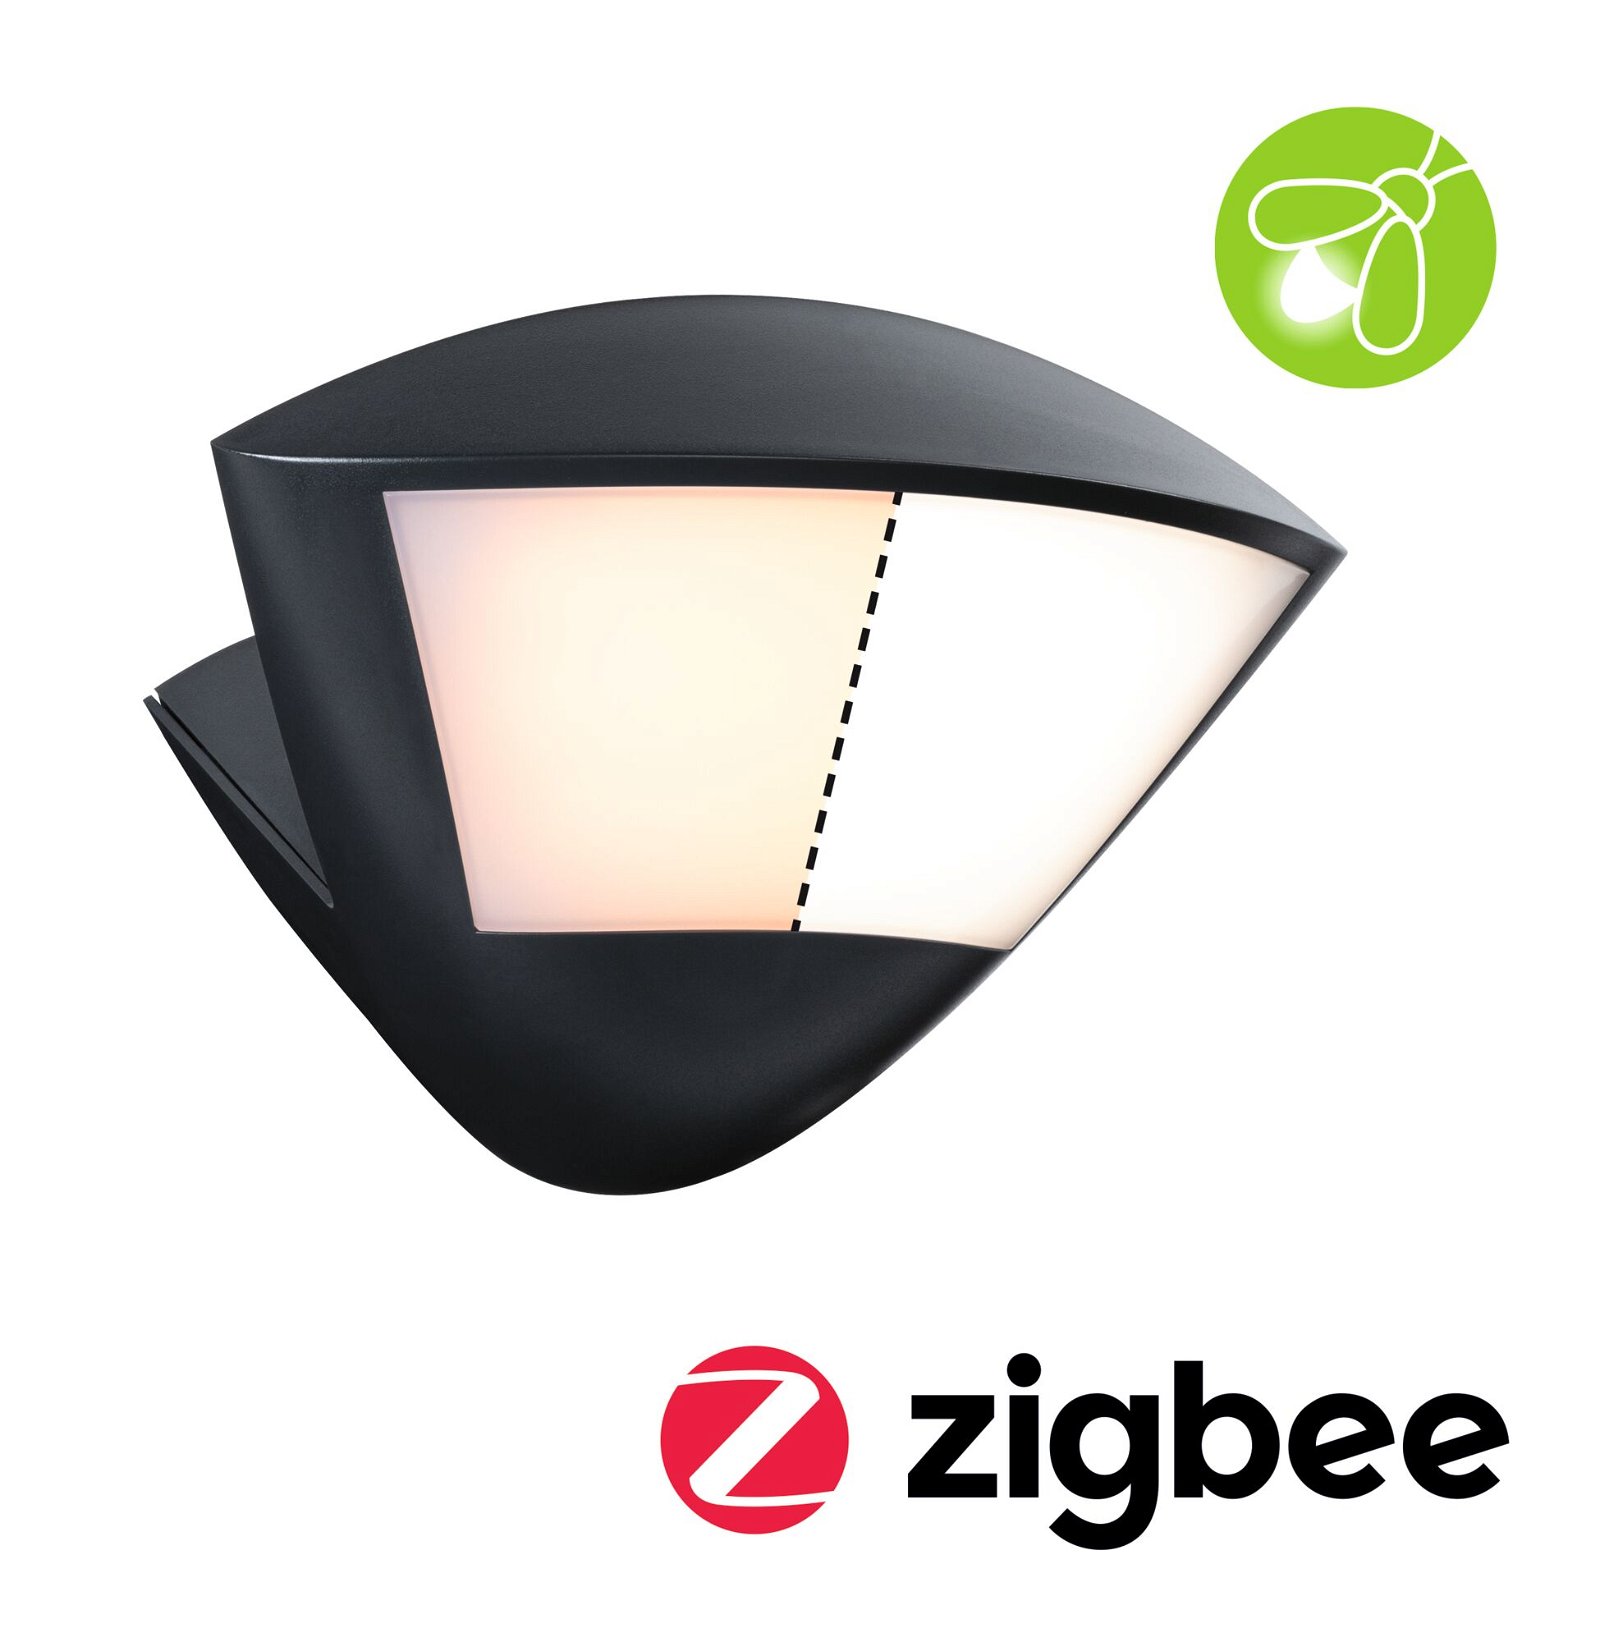 LED-wandarmatuur voor buiten Smart Home Zigbee 3.0 Skyla Bewegingsmelder insectvriendelijk IP44 226x164mm Tunable Warm 10W 840lm 230V Antraciet Aluminium